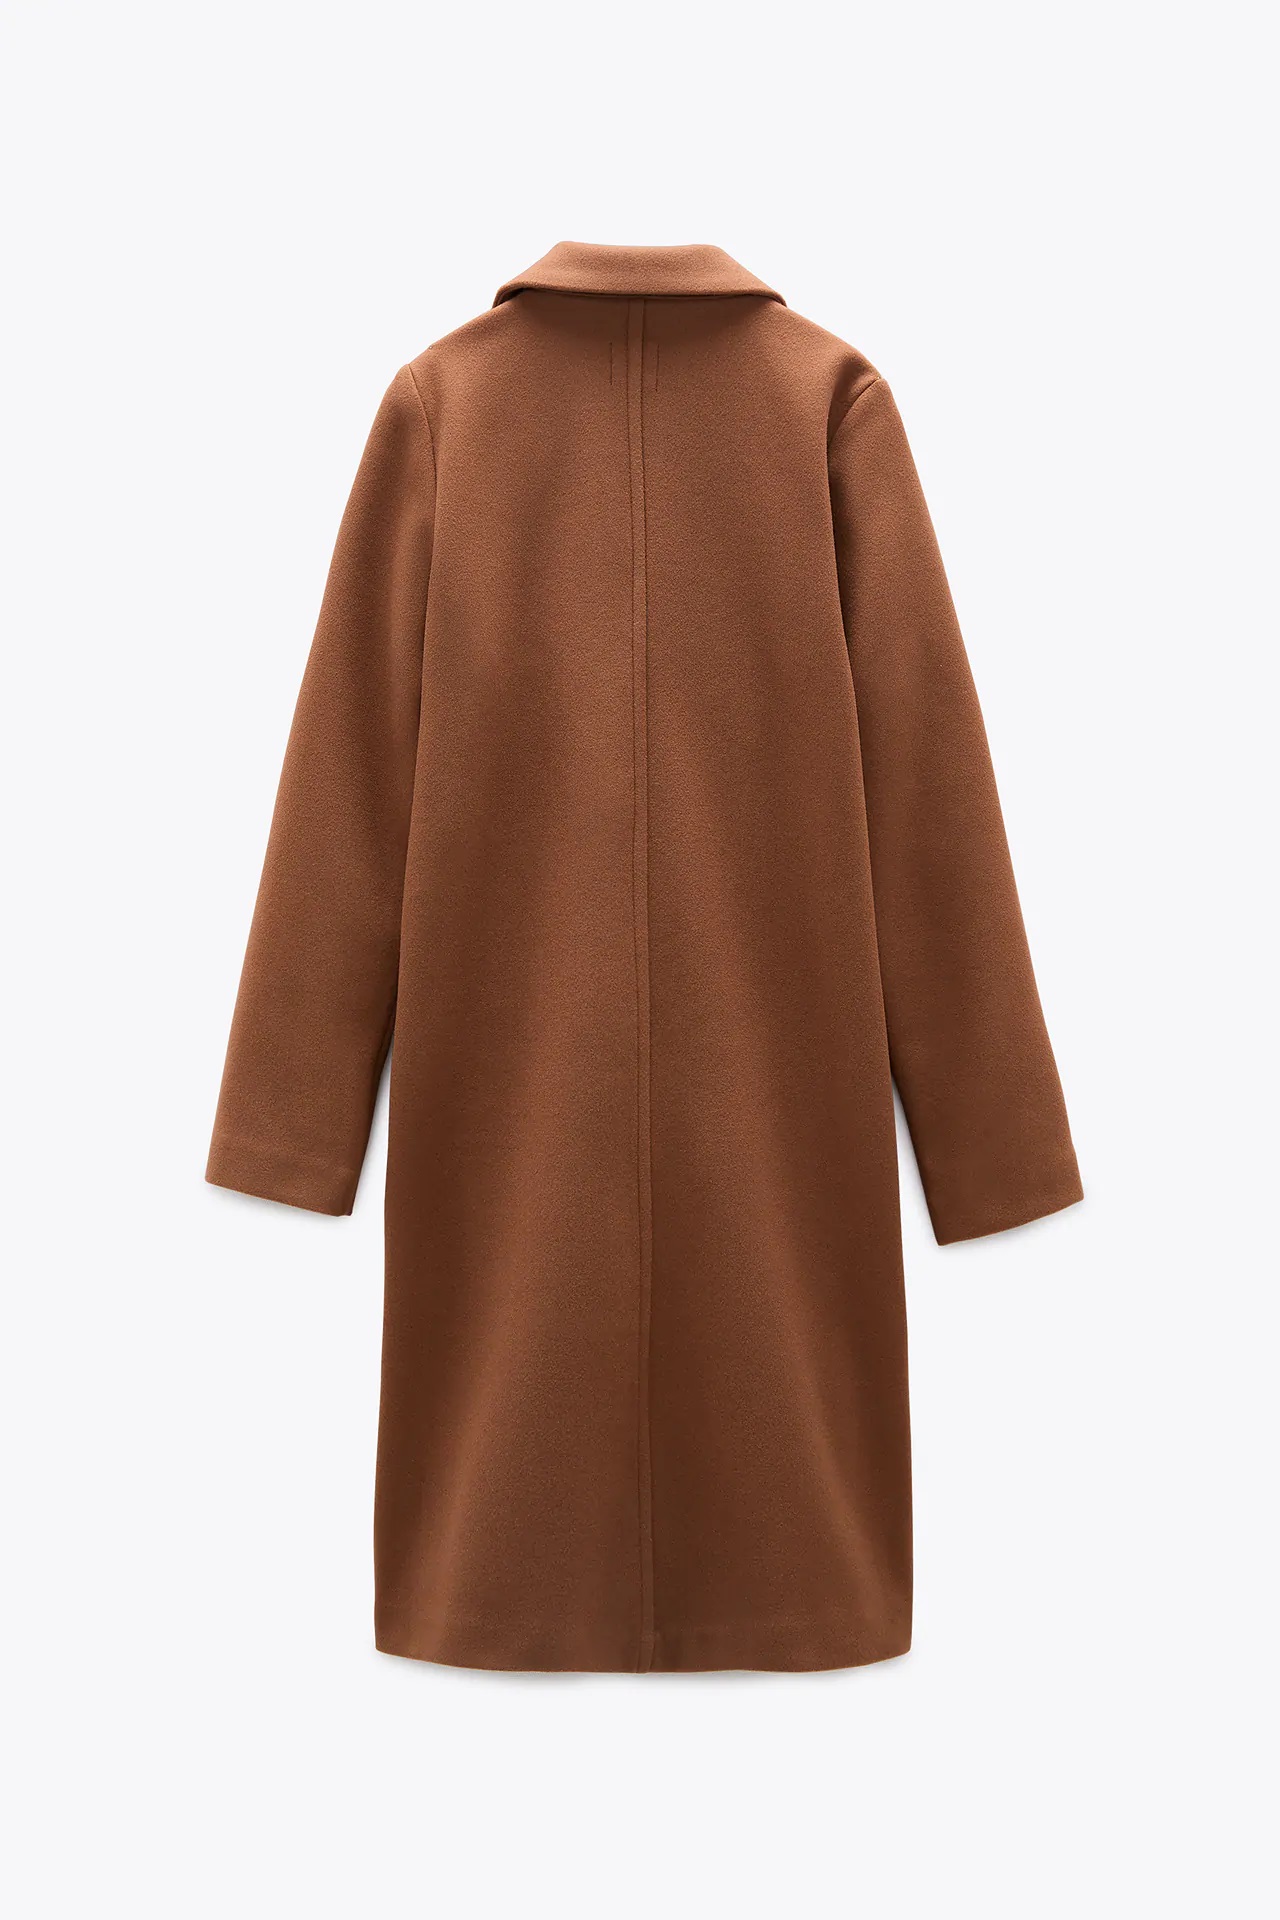 Zara tiene el abrigo low cost perfecto para los primeros días de frío a la venta por 29,99 euros